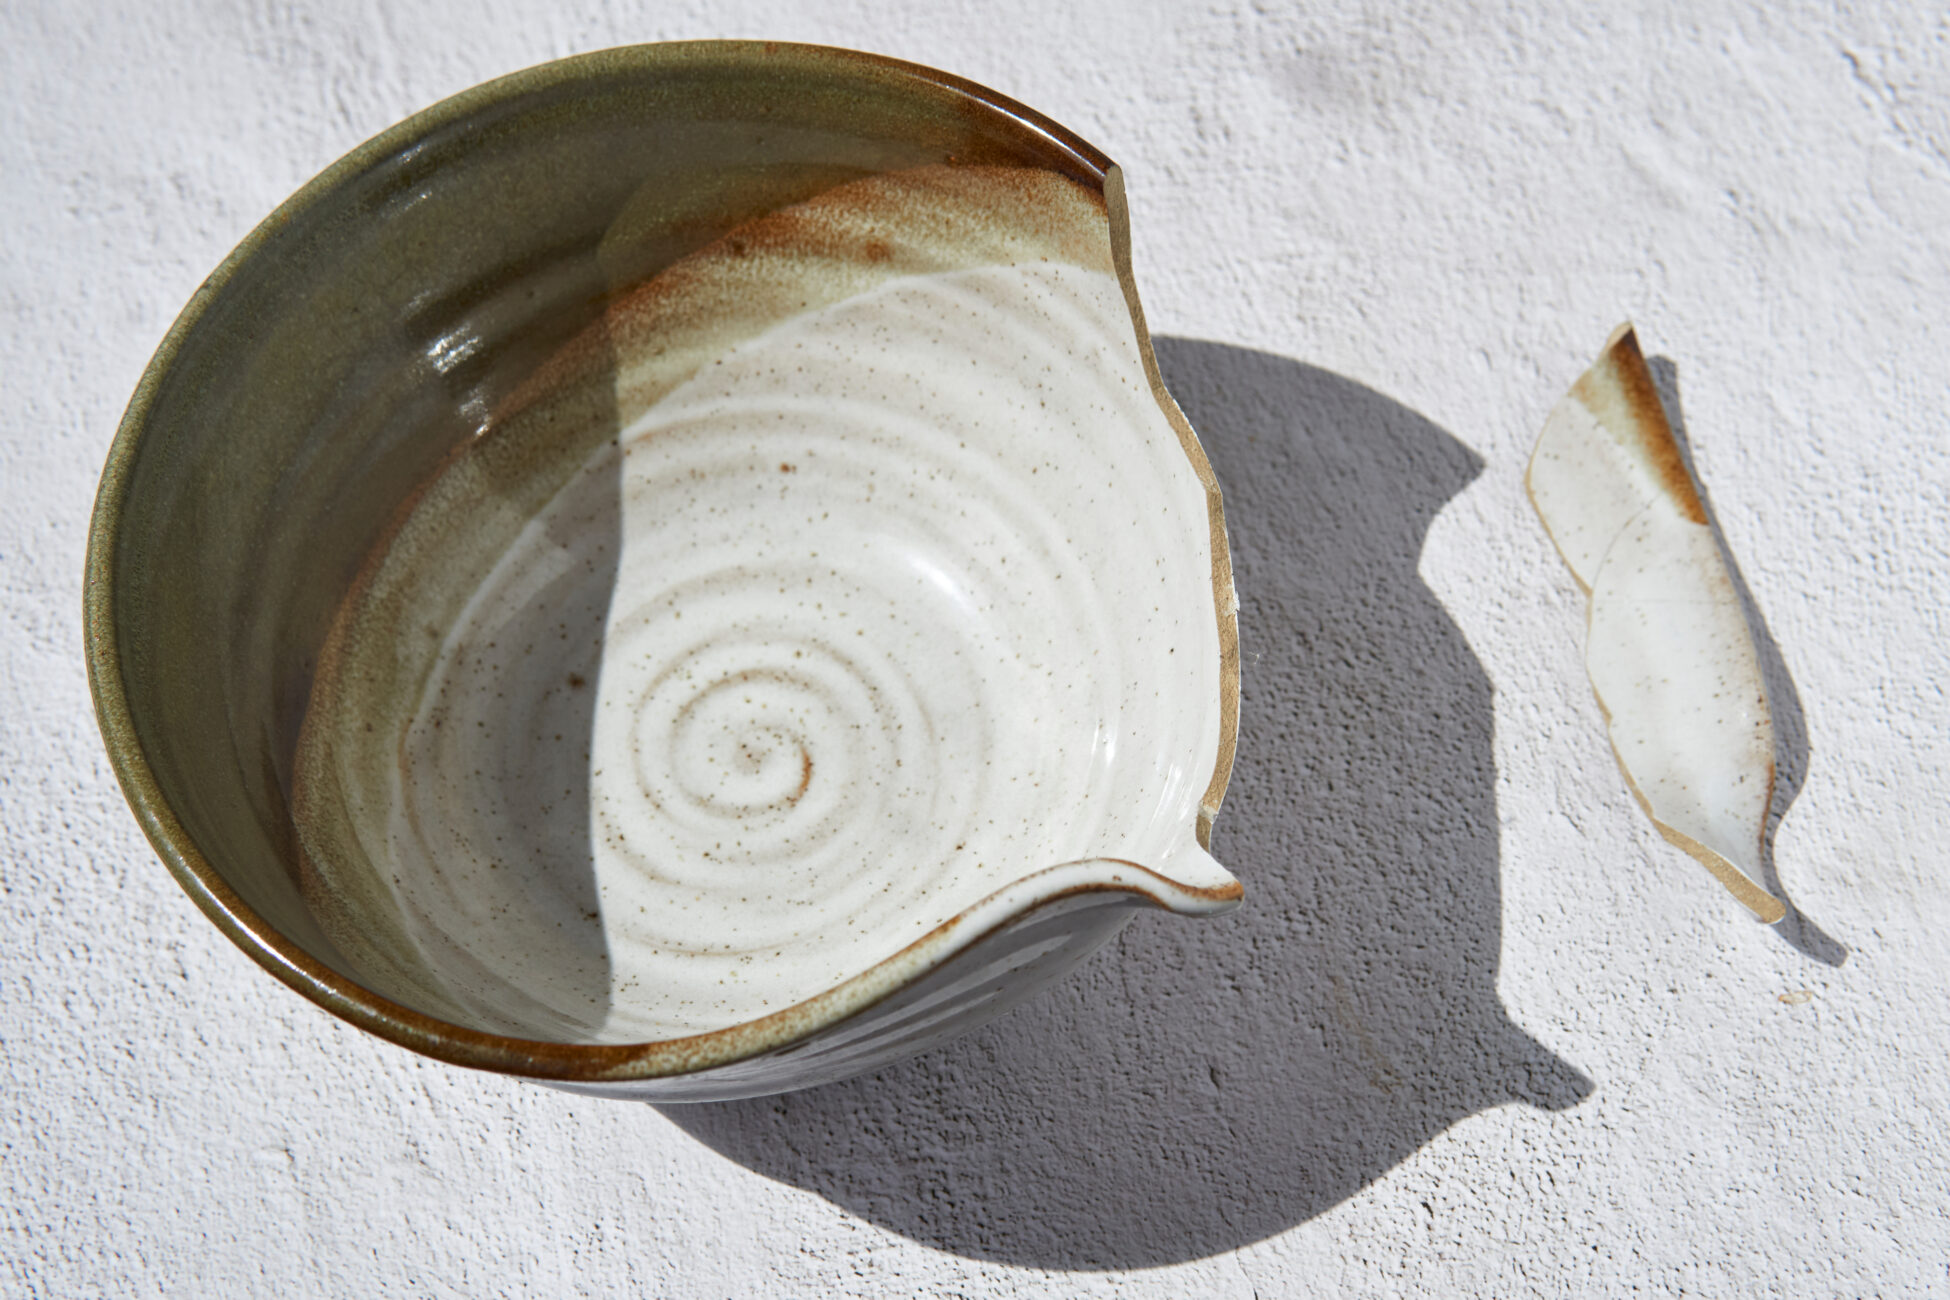 Broken ceramics bowl